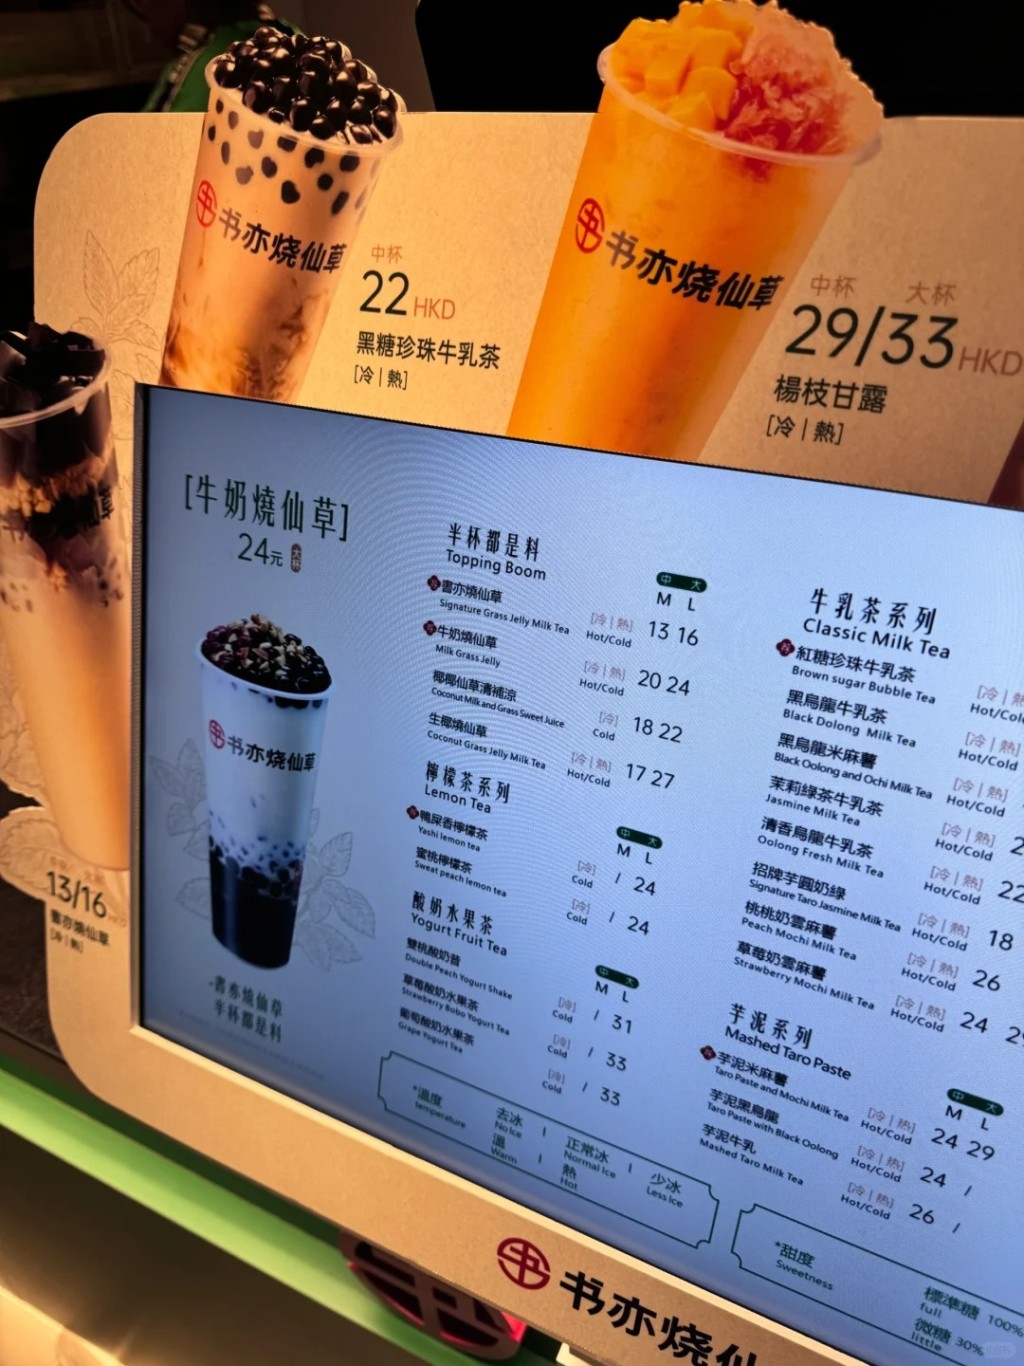 以香港物價而言算是超抵飲！（圖片來源：香港吃吃隊長@小紅書）